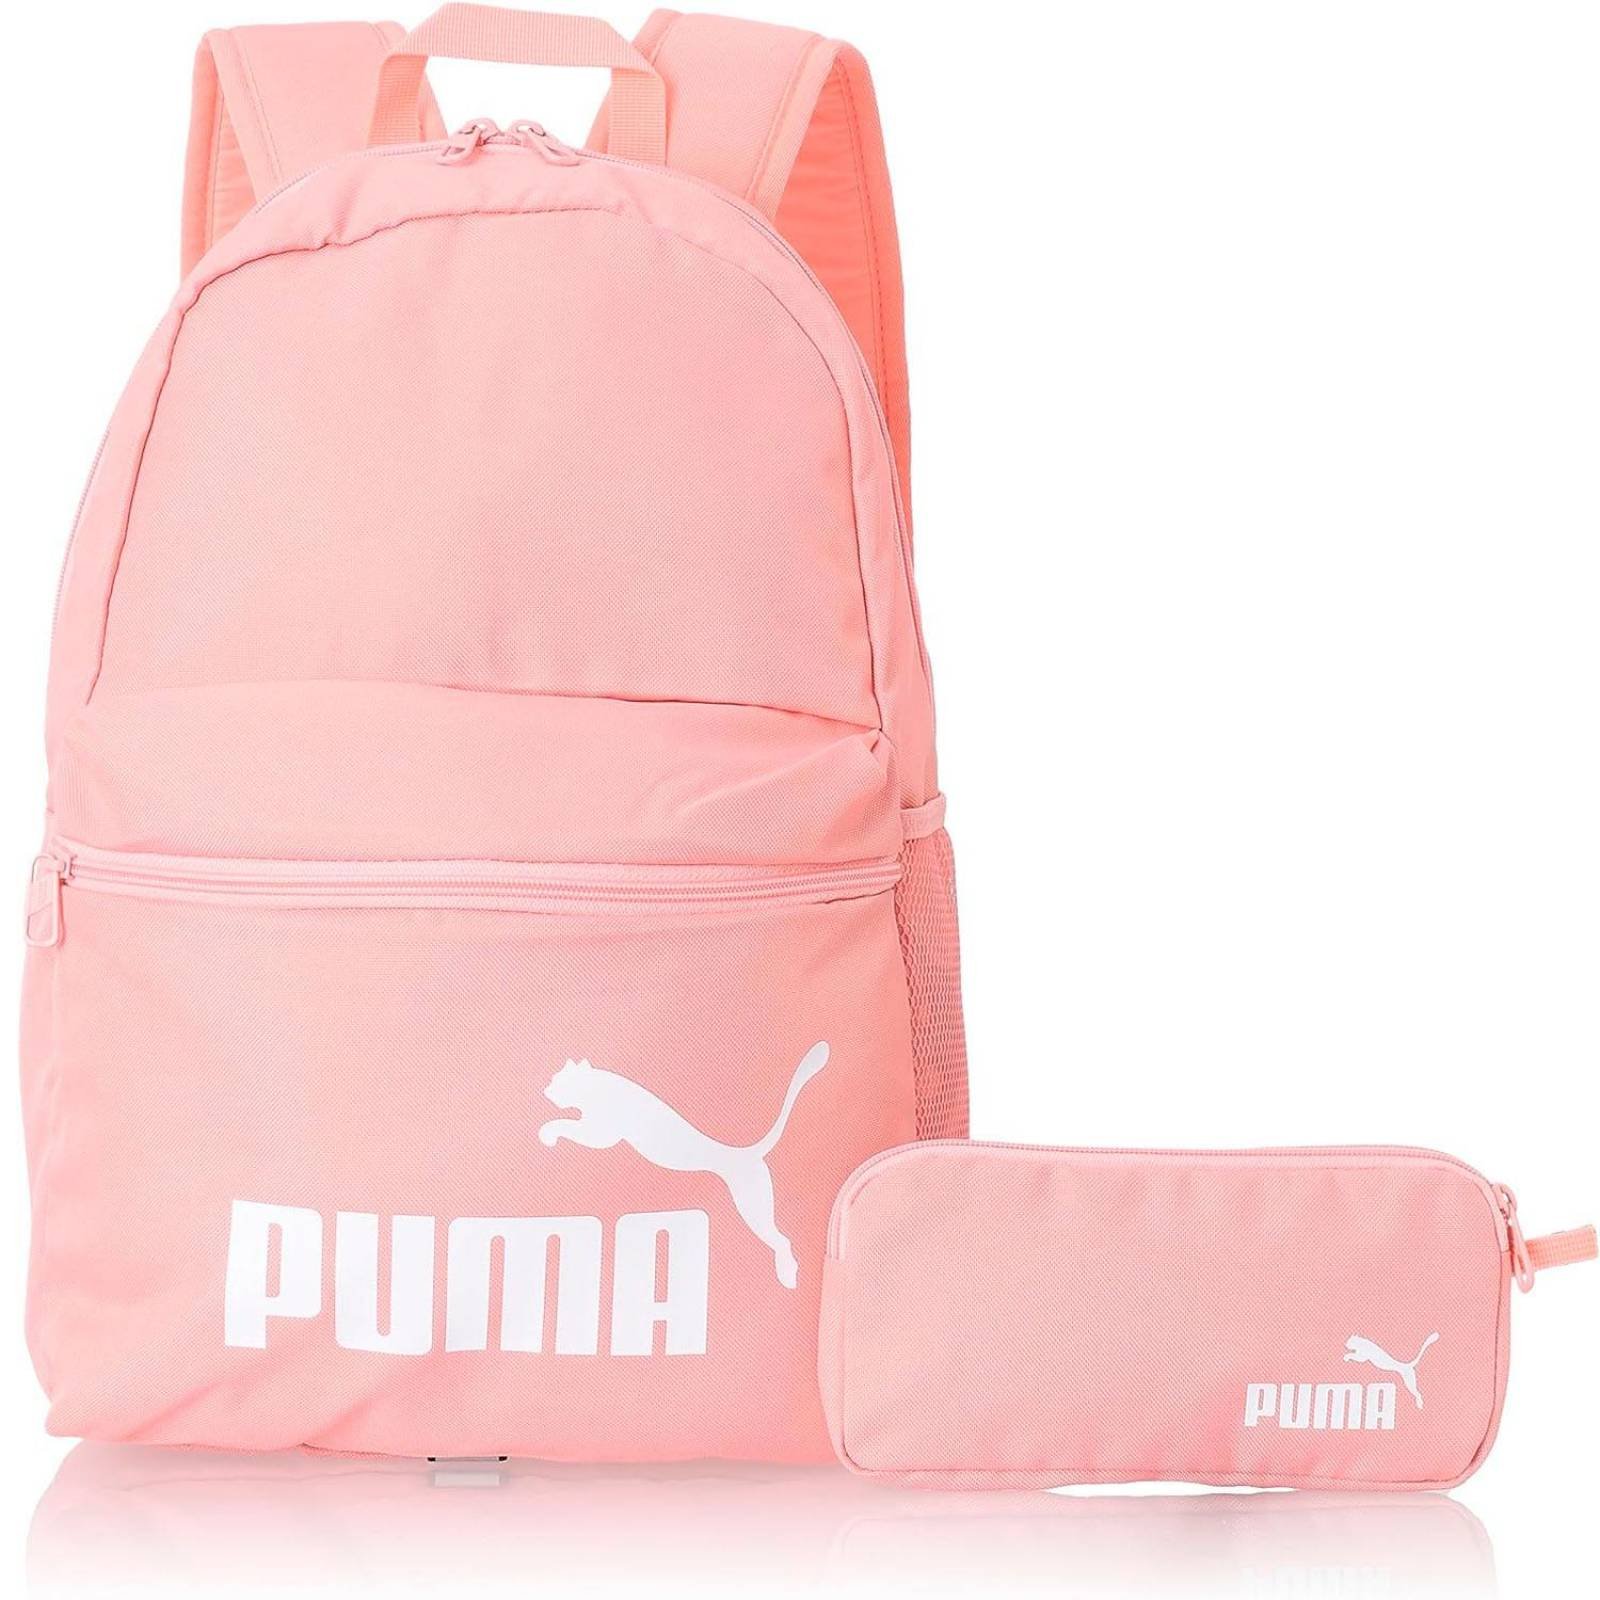 PUMA - Combo de juego de mochila y lonchera para niños